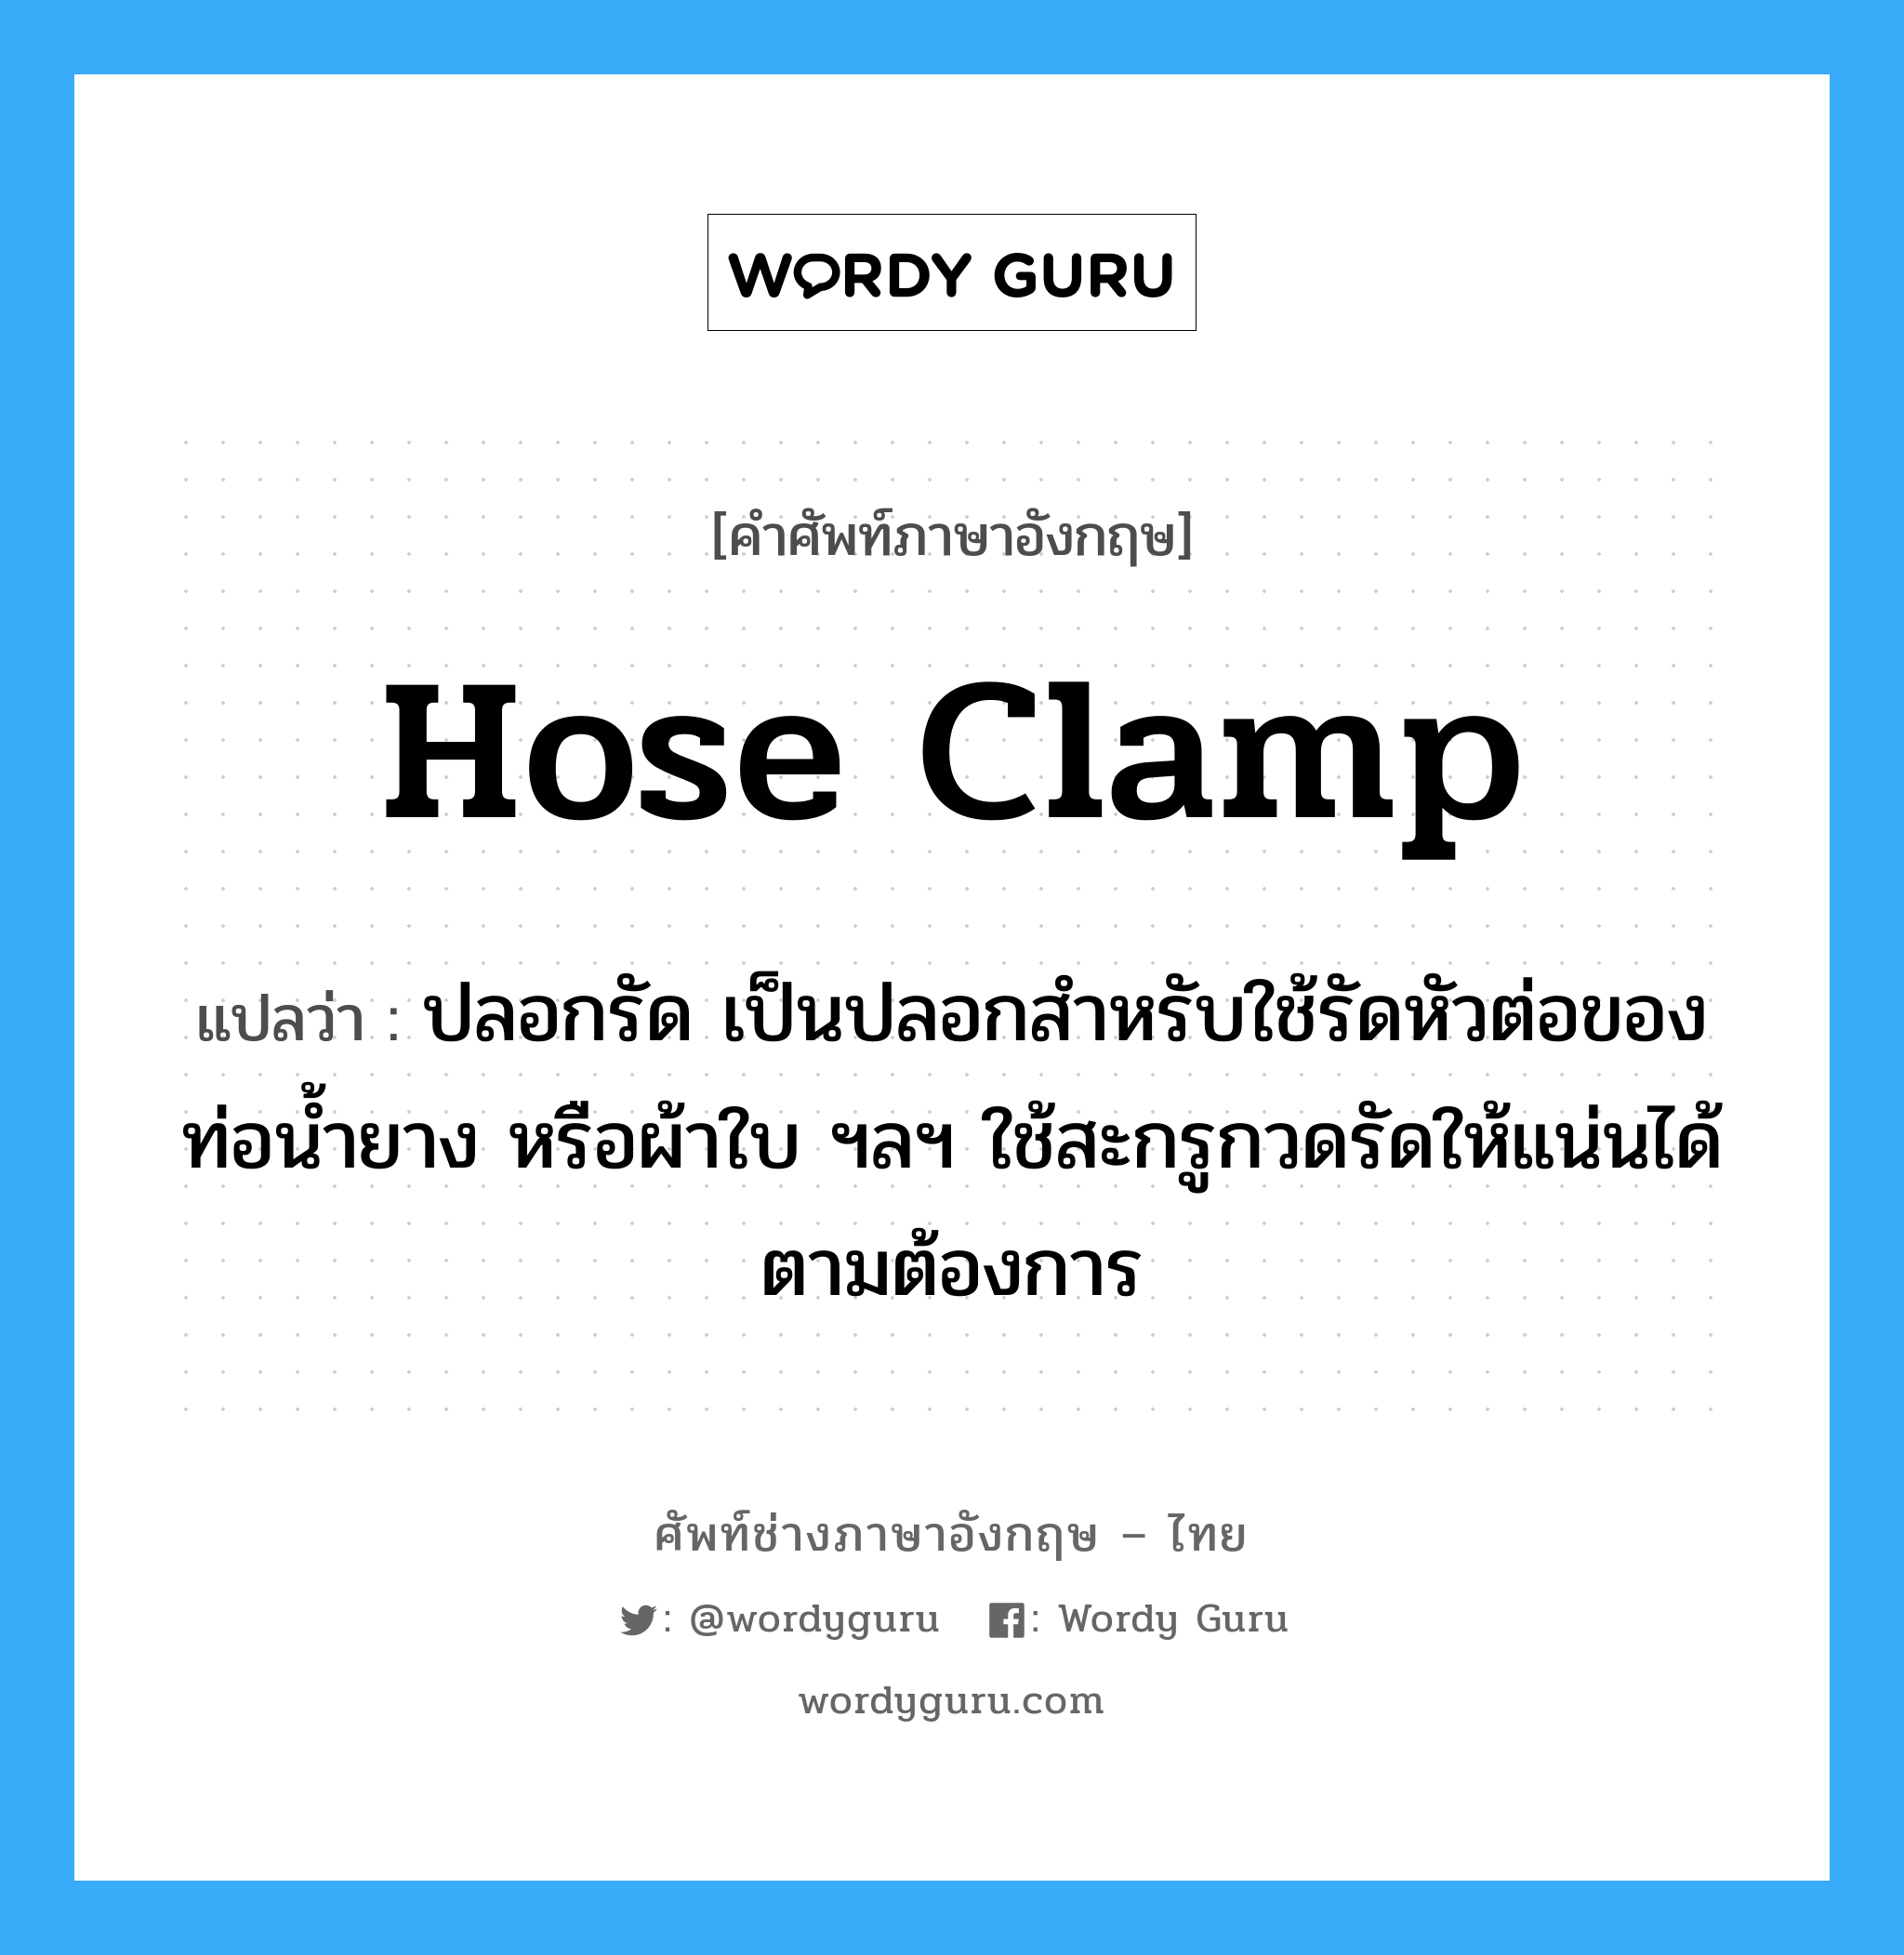 hose clamp แปลว่า?, คำศัพท์ช่างภาษาอังกฤษ - ไทย hose clamp คำศัพท์ภาษาอังกฤษ hose clamp แปลว่า ปลอกรัด เป็นปลอกสำหรับใช้รัดหัวต่อของท่อน้ำยาง หรือผ้าใบ ฯลฯ ใช้สะกรูกวดรัดให้แน่นได้ตามต้องการ